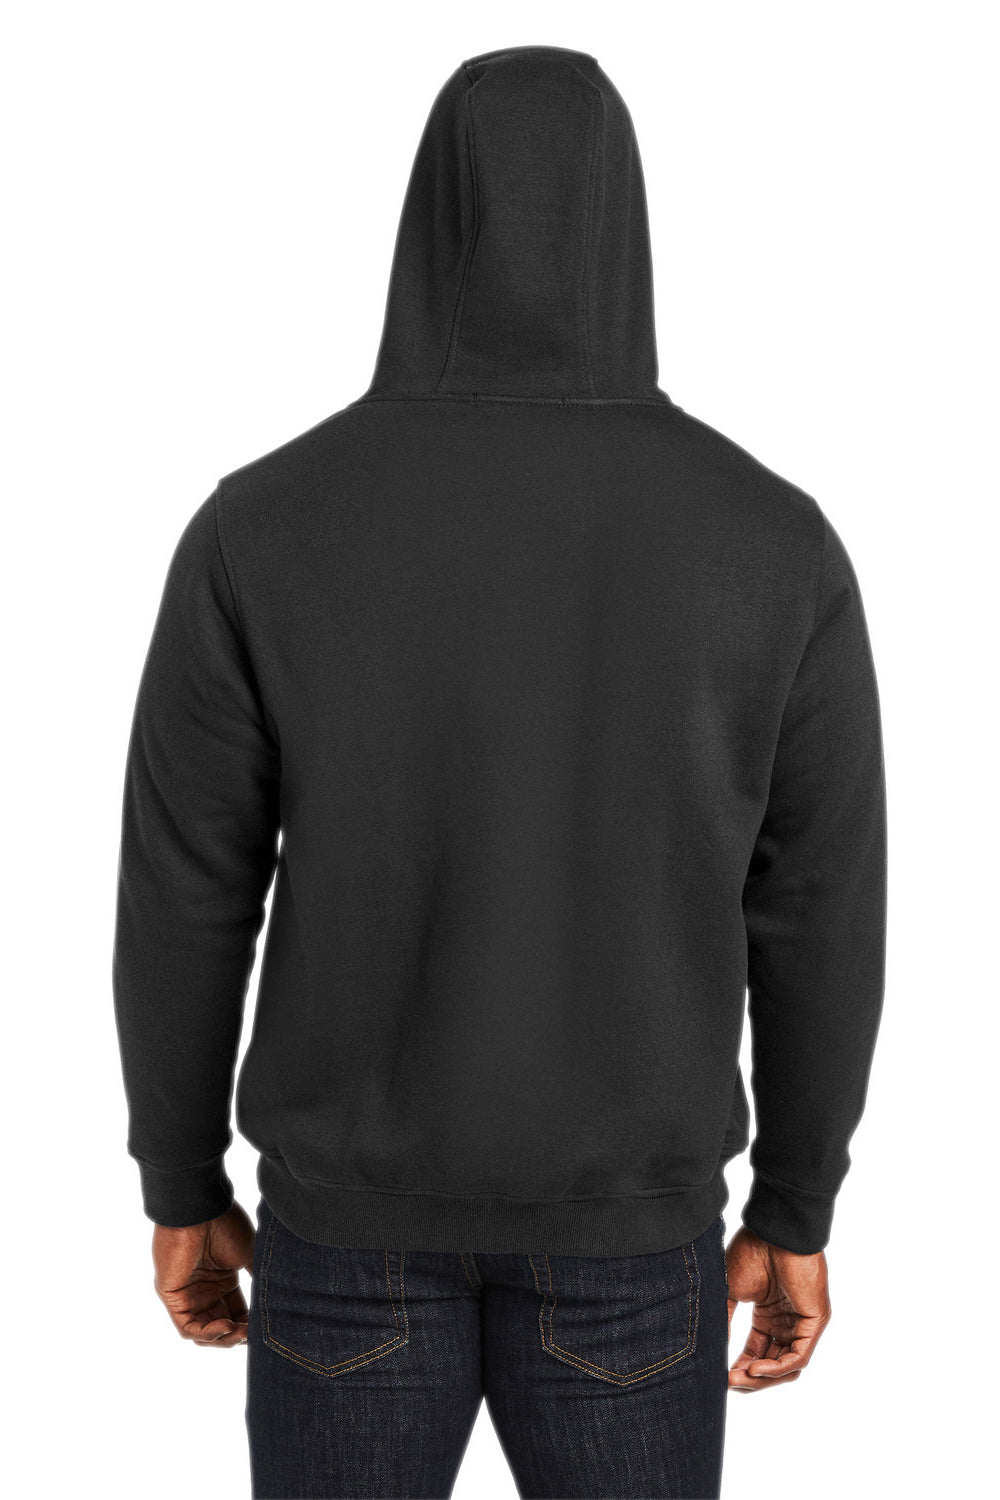 Harriton M711/M711T Mens Climabloc Full Zip Hooded Sweatshirt Hoodie Black Back